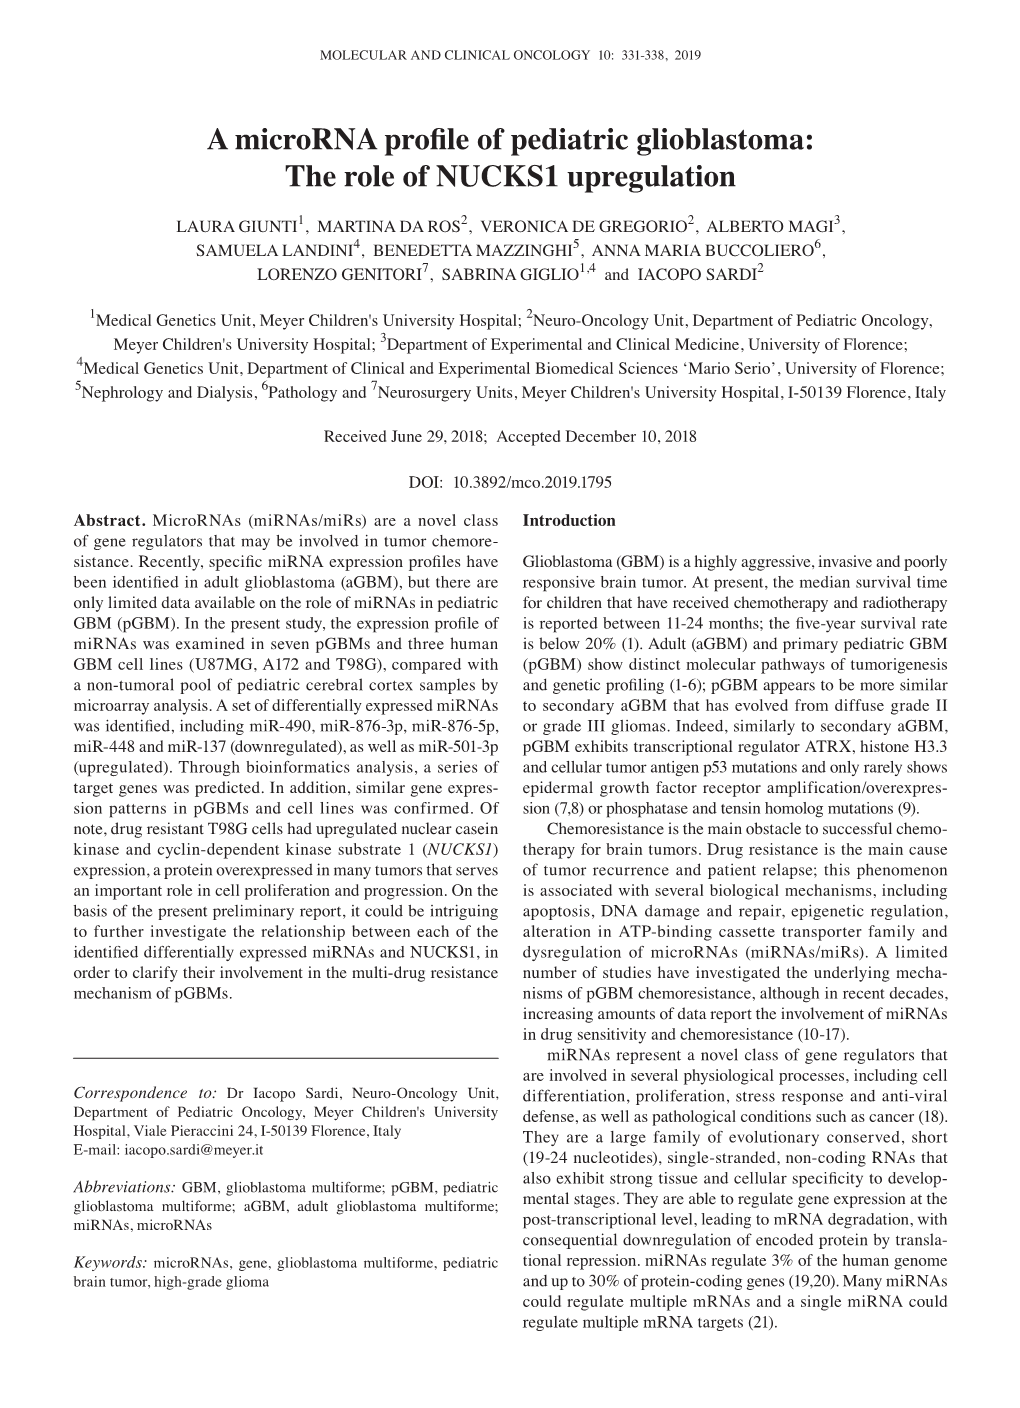 A Microrna Profile of Pediatric Glioblastoma: the Role of NUCKS1 Upregulation